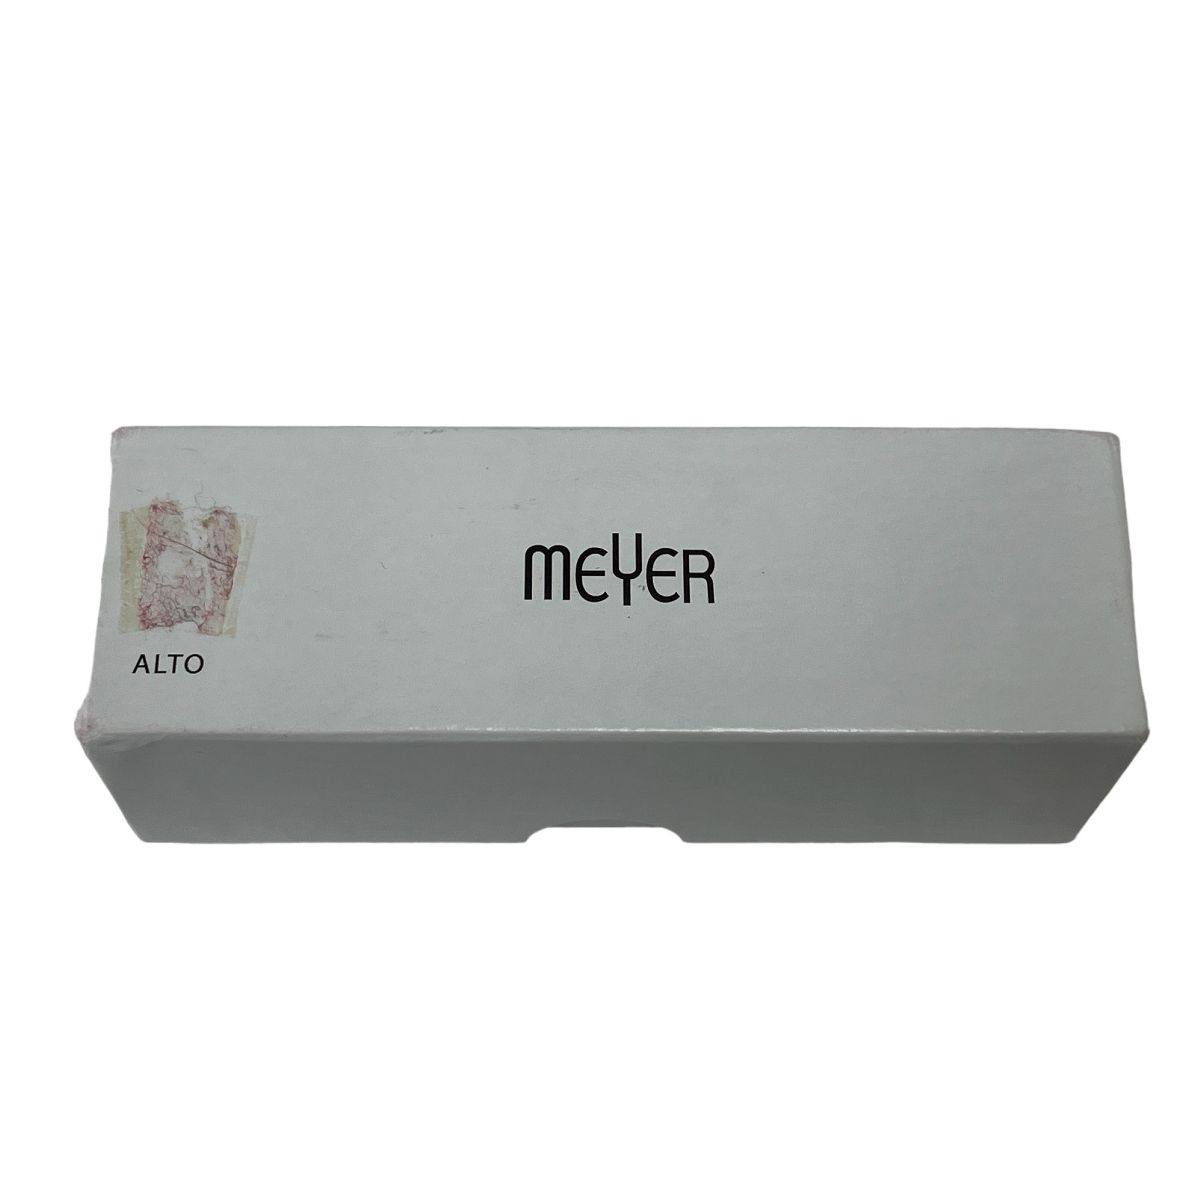 Meyer マイヤー 5M マウスピース アルトサックス用 リガチャー付 中古 M8975060 - メルカリ